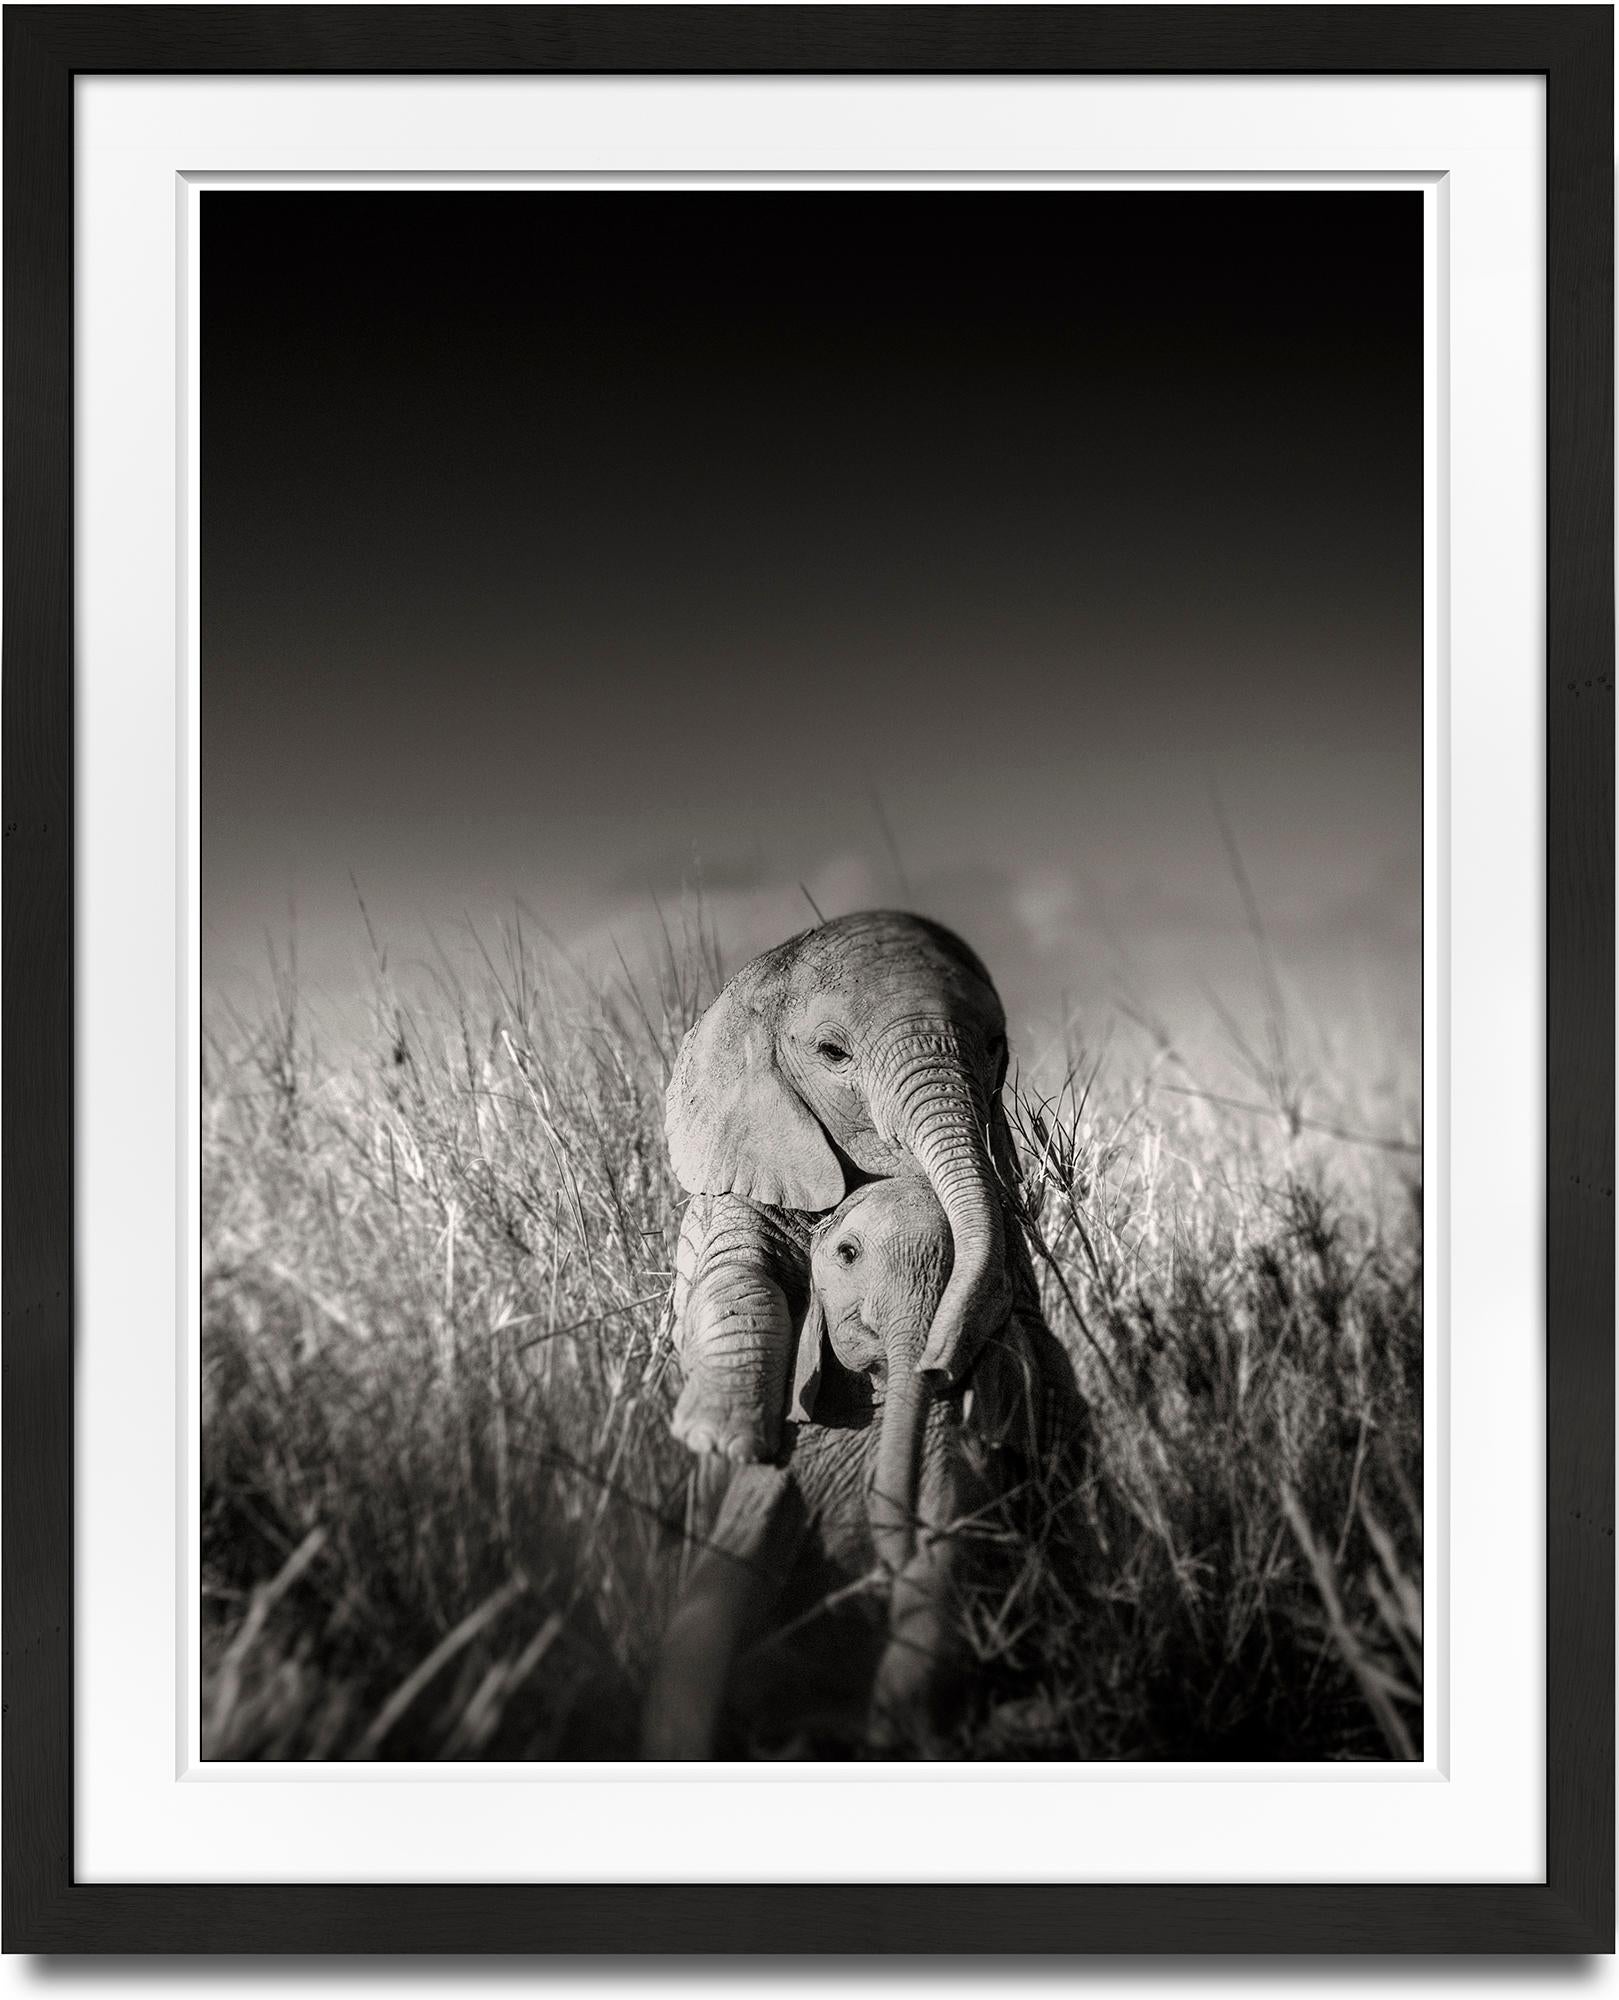 Wild Wilde Elefanten spielen mit I, zeitgenössisch, Wildtiere, b+w Fotografie – Photograph von Joachim Schmeisser